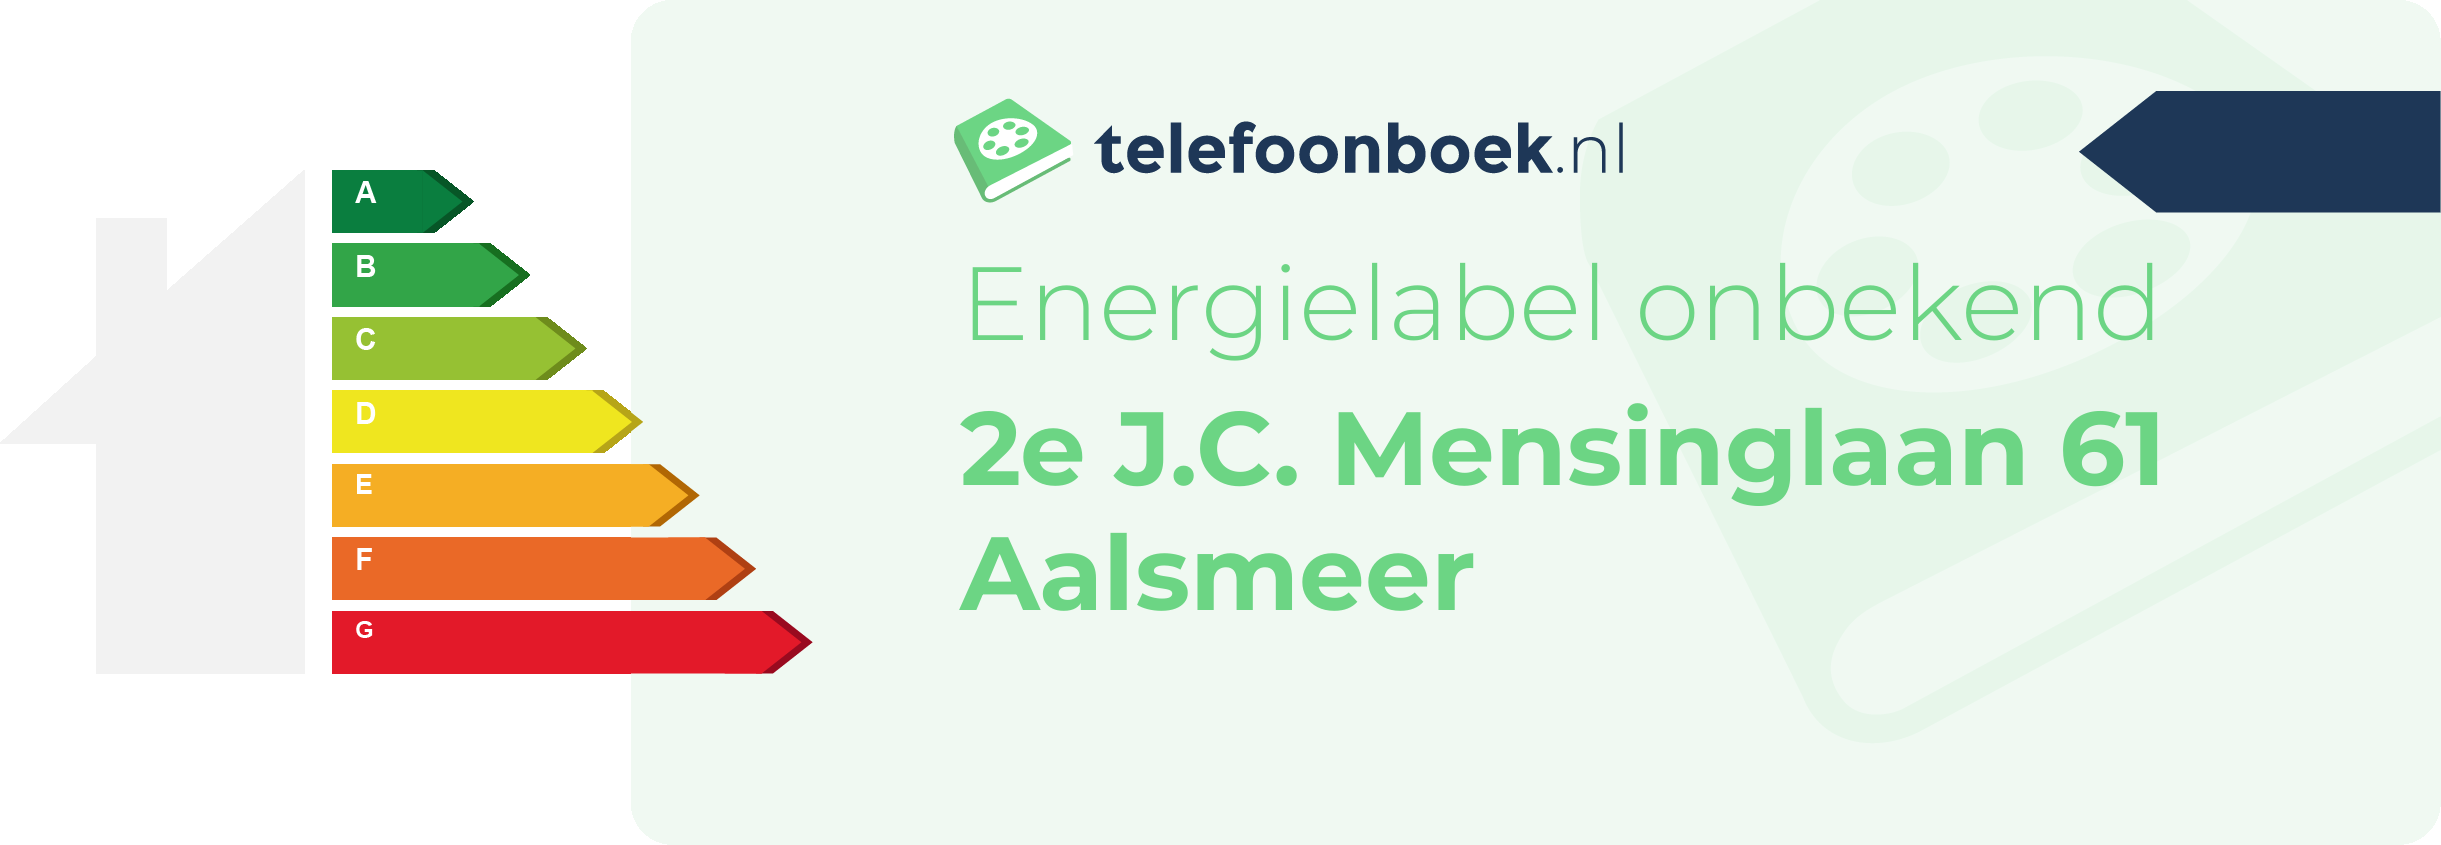 Energielabel 2e J.C. Mensinglaan 61 Aalsmeer